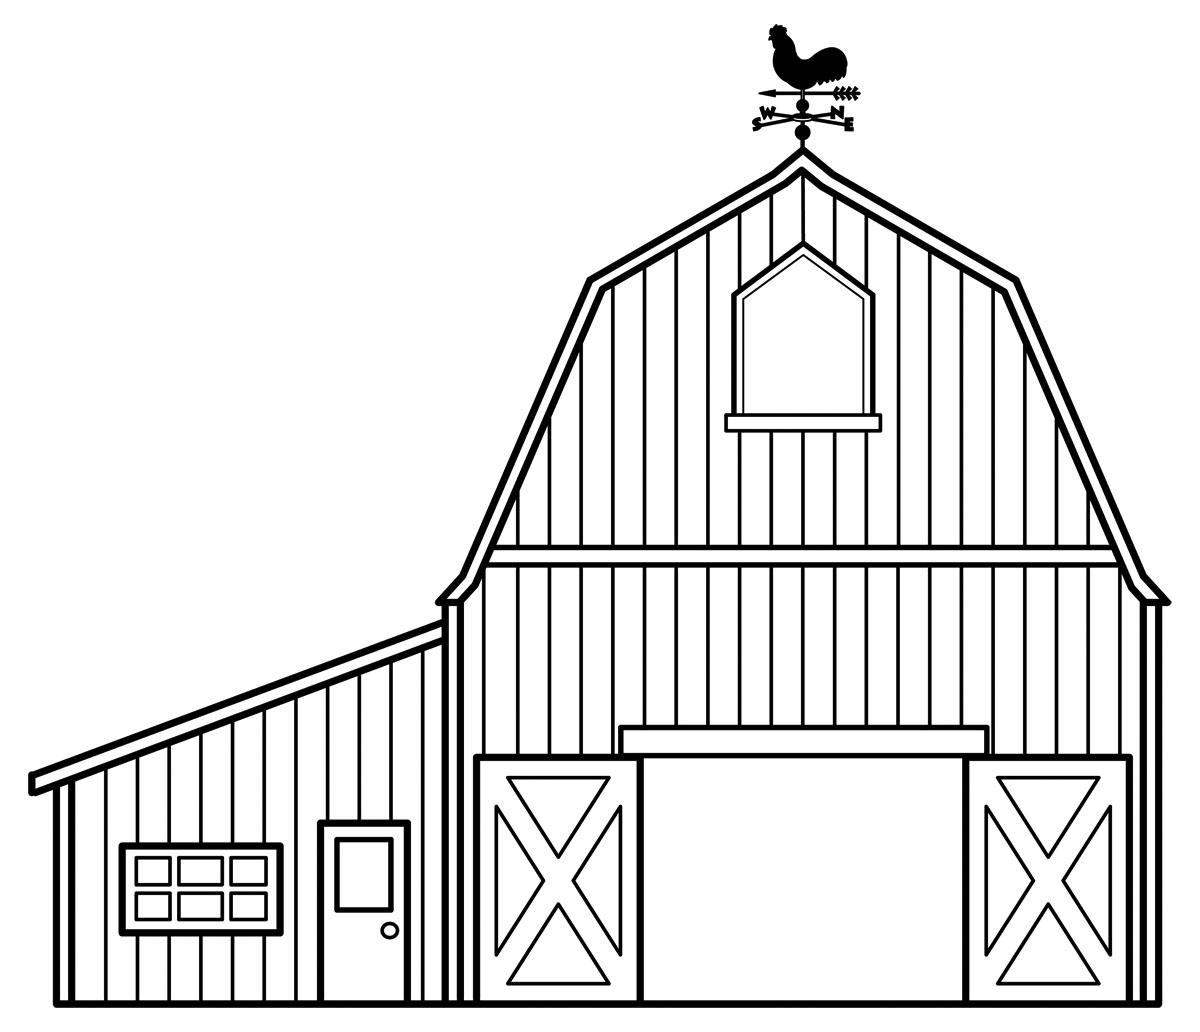 barn: Farm animals in the bar